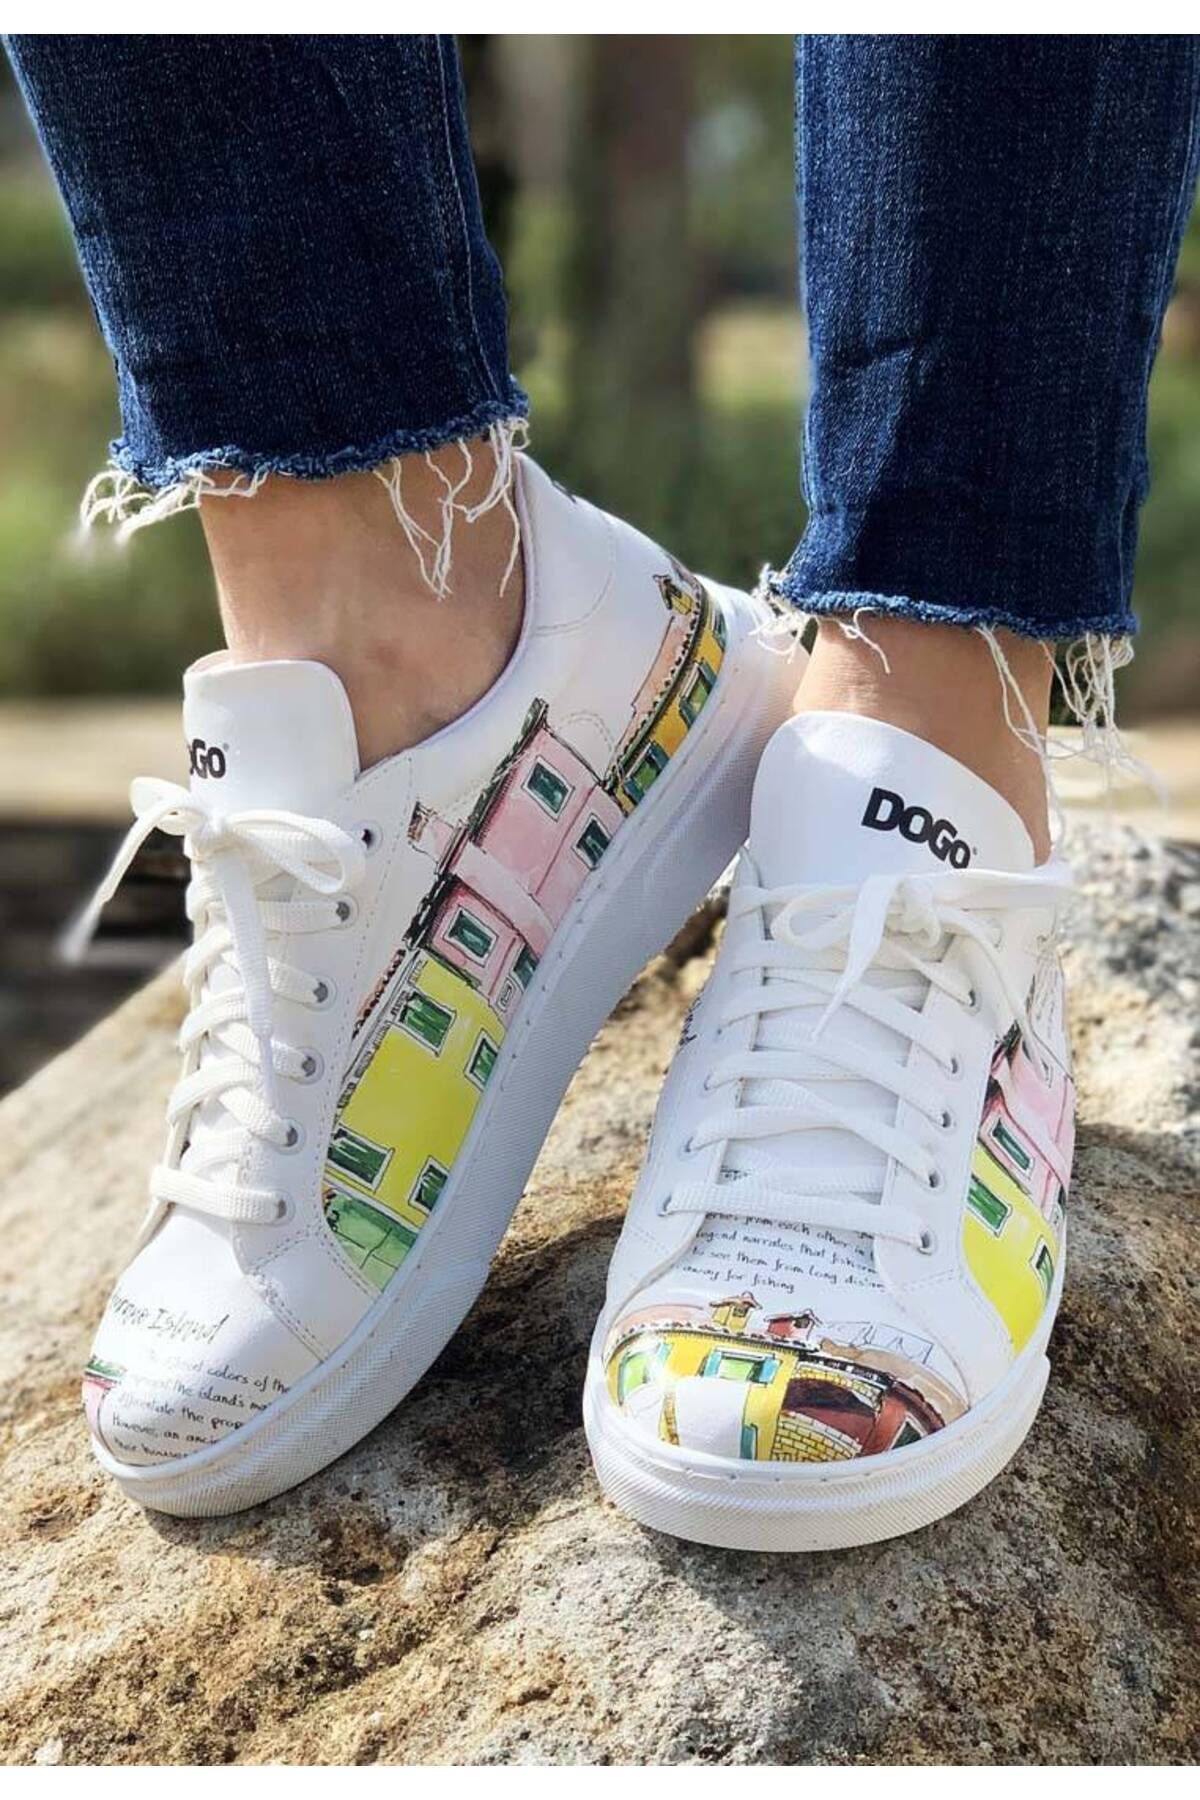 Dogo Kadın Vegan Deri Beyaz Sneakers - Burano Island Tasarım